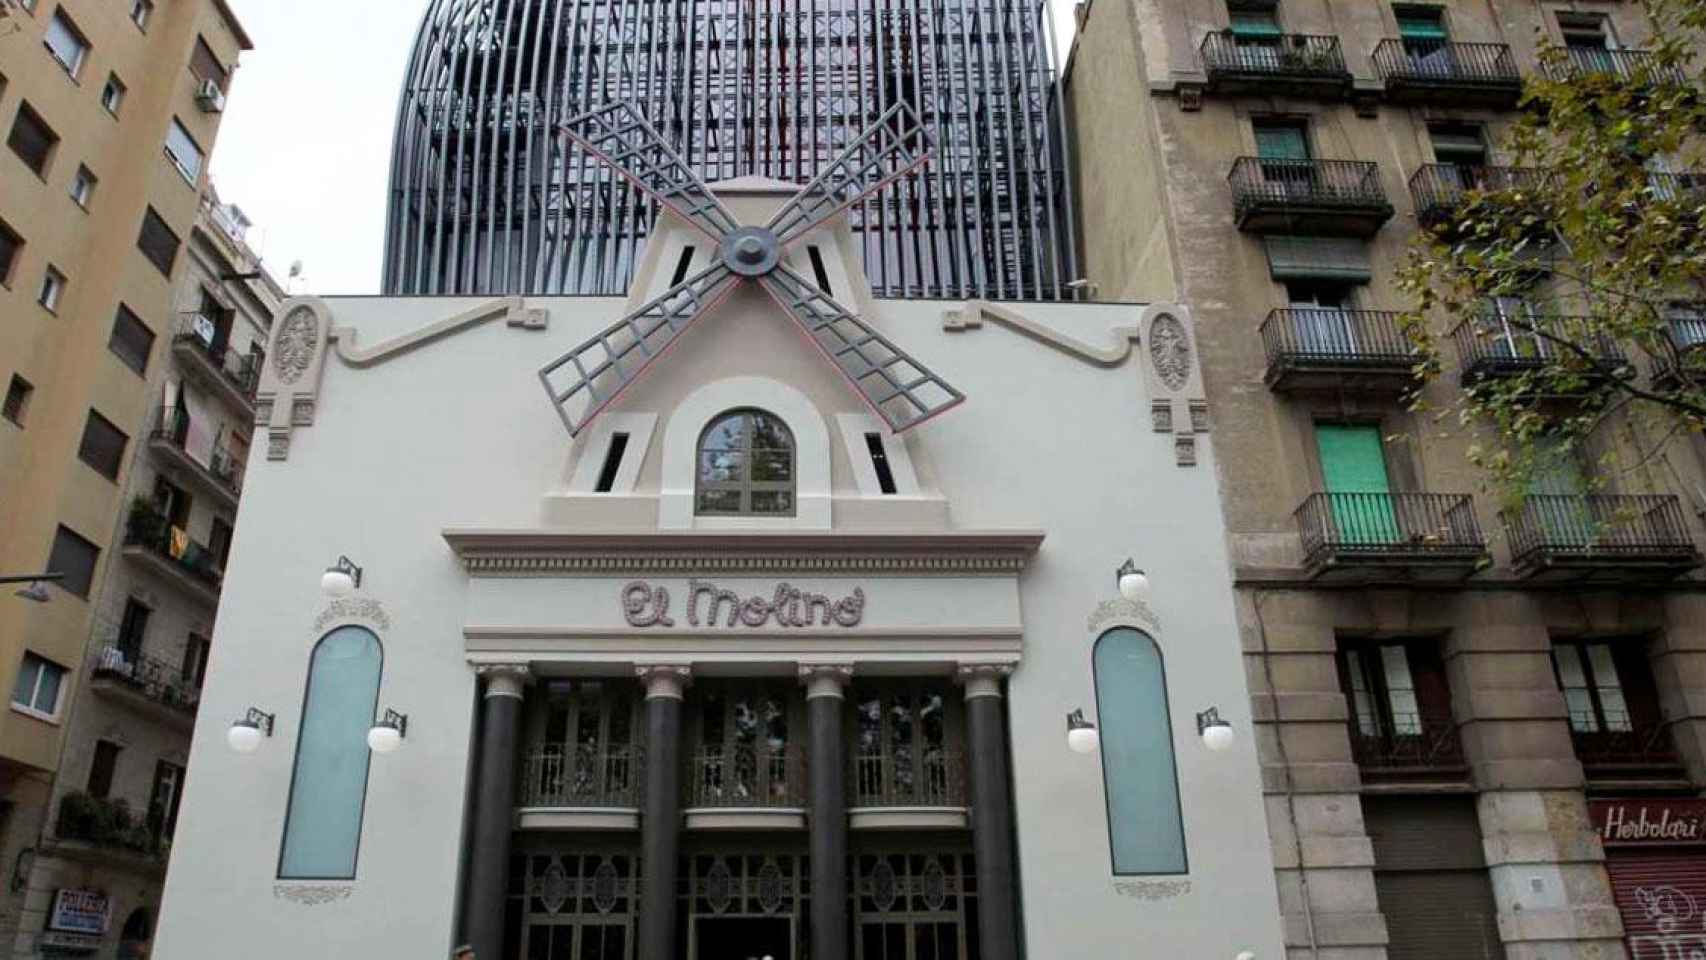 Fachada de El Molino, teatro de cabaré cerrado situado en la avenida Paral·lel de Barcelona / CG